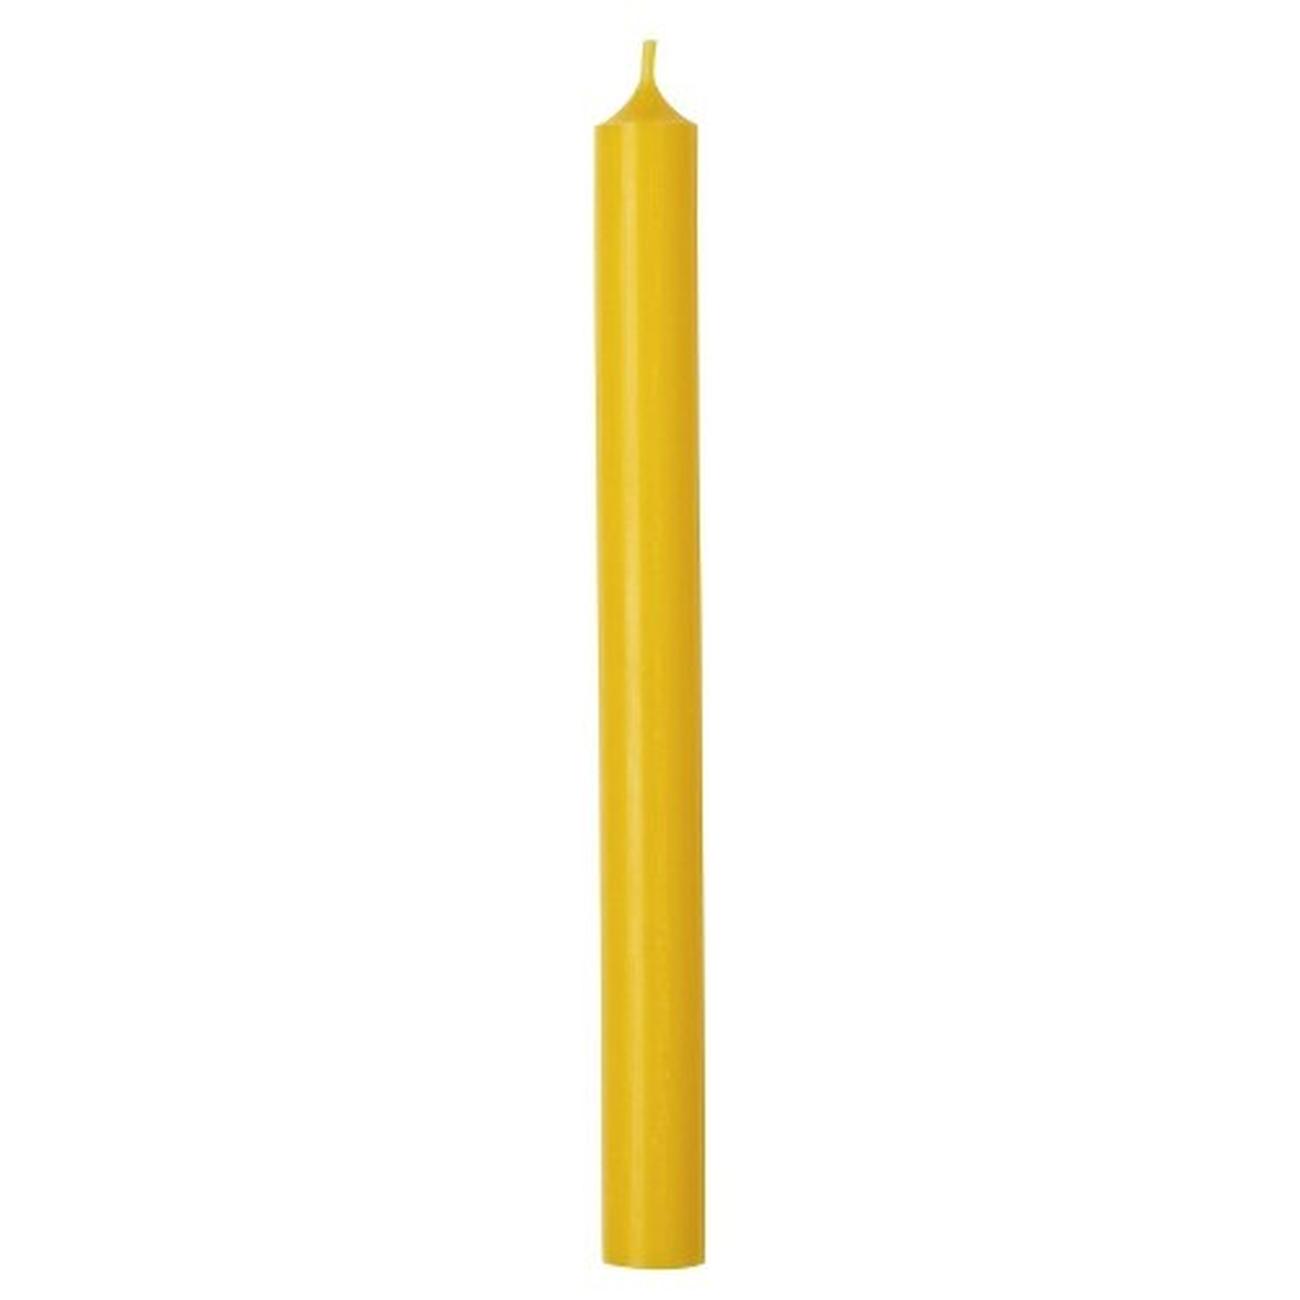 ihr-cylinder-candle-dark-yellow - IHR Cylinder Candle Mustard